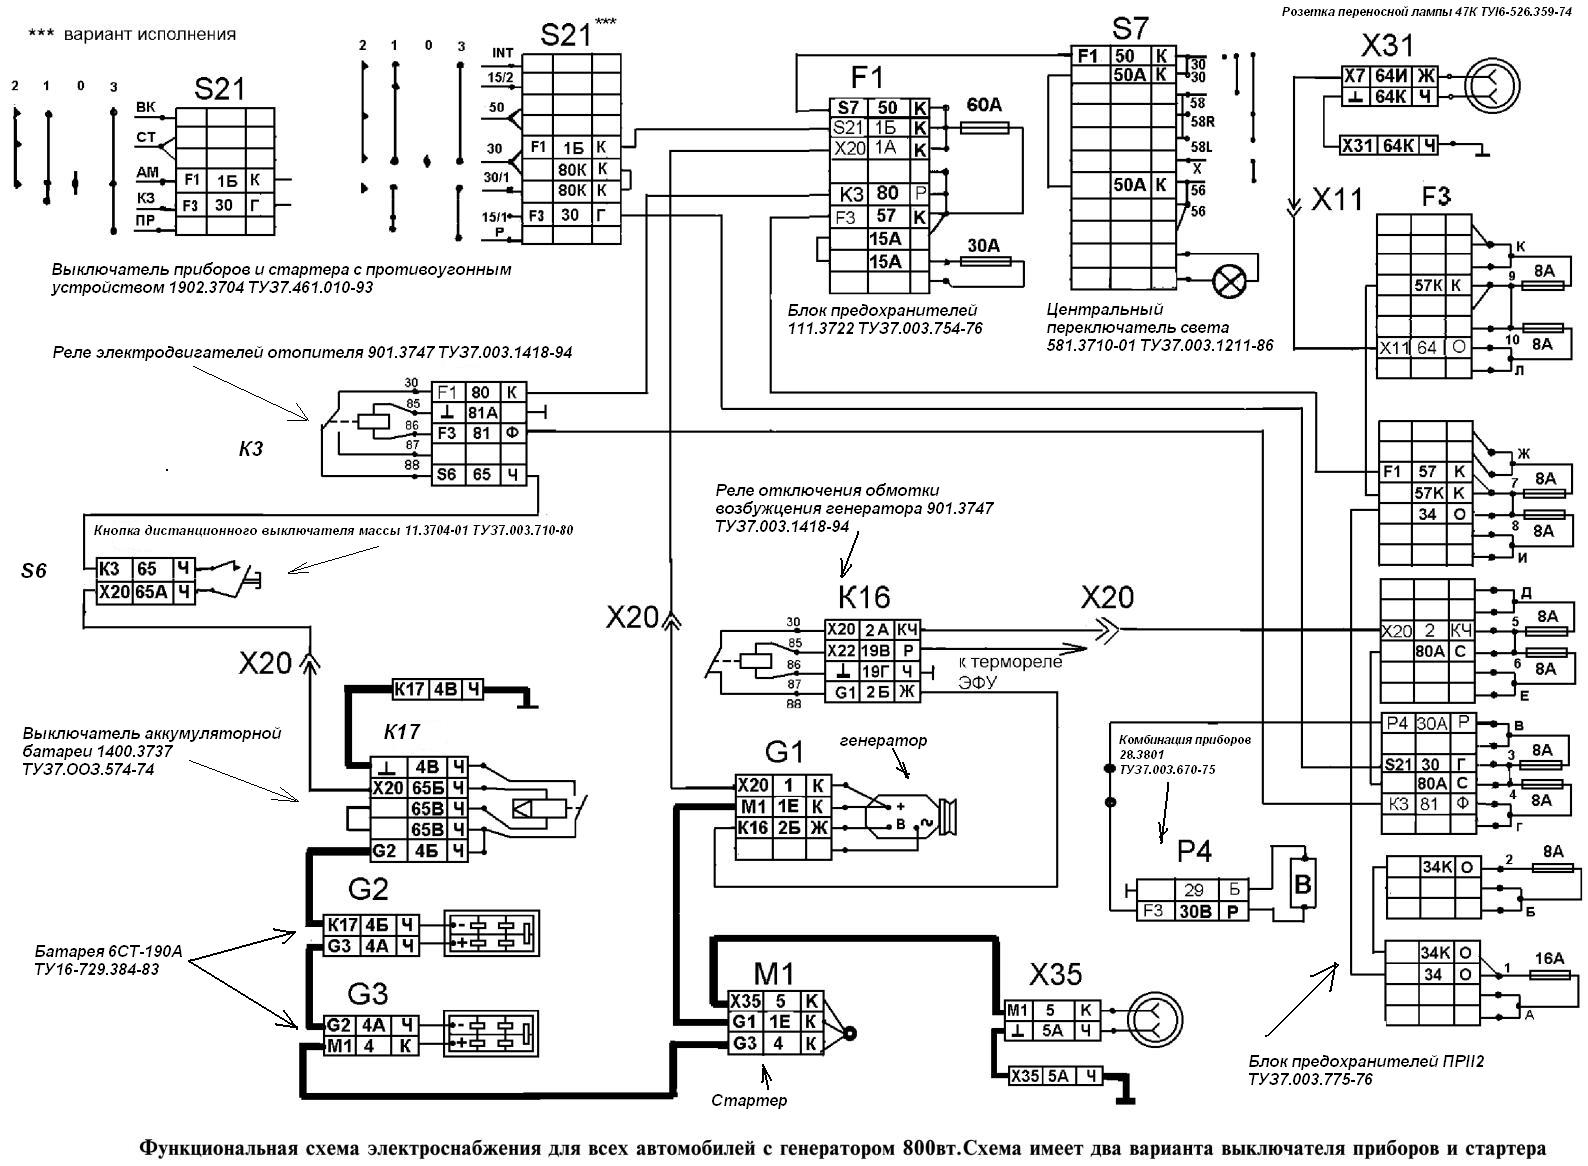 Stromversorgungsdiagramm für Kamaz-Fahrzeuge mit 800-W-Generator